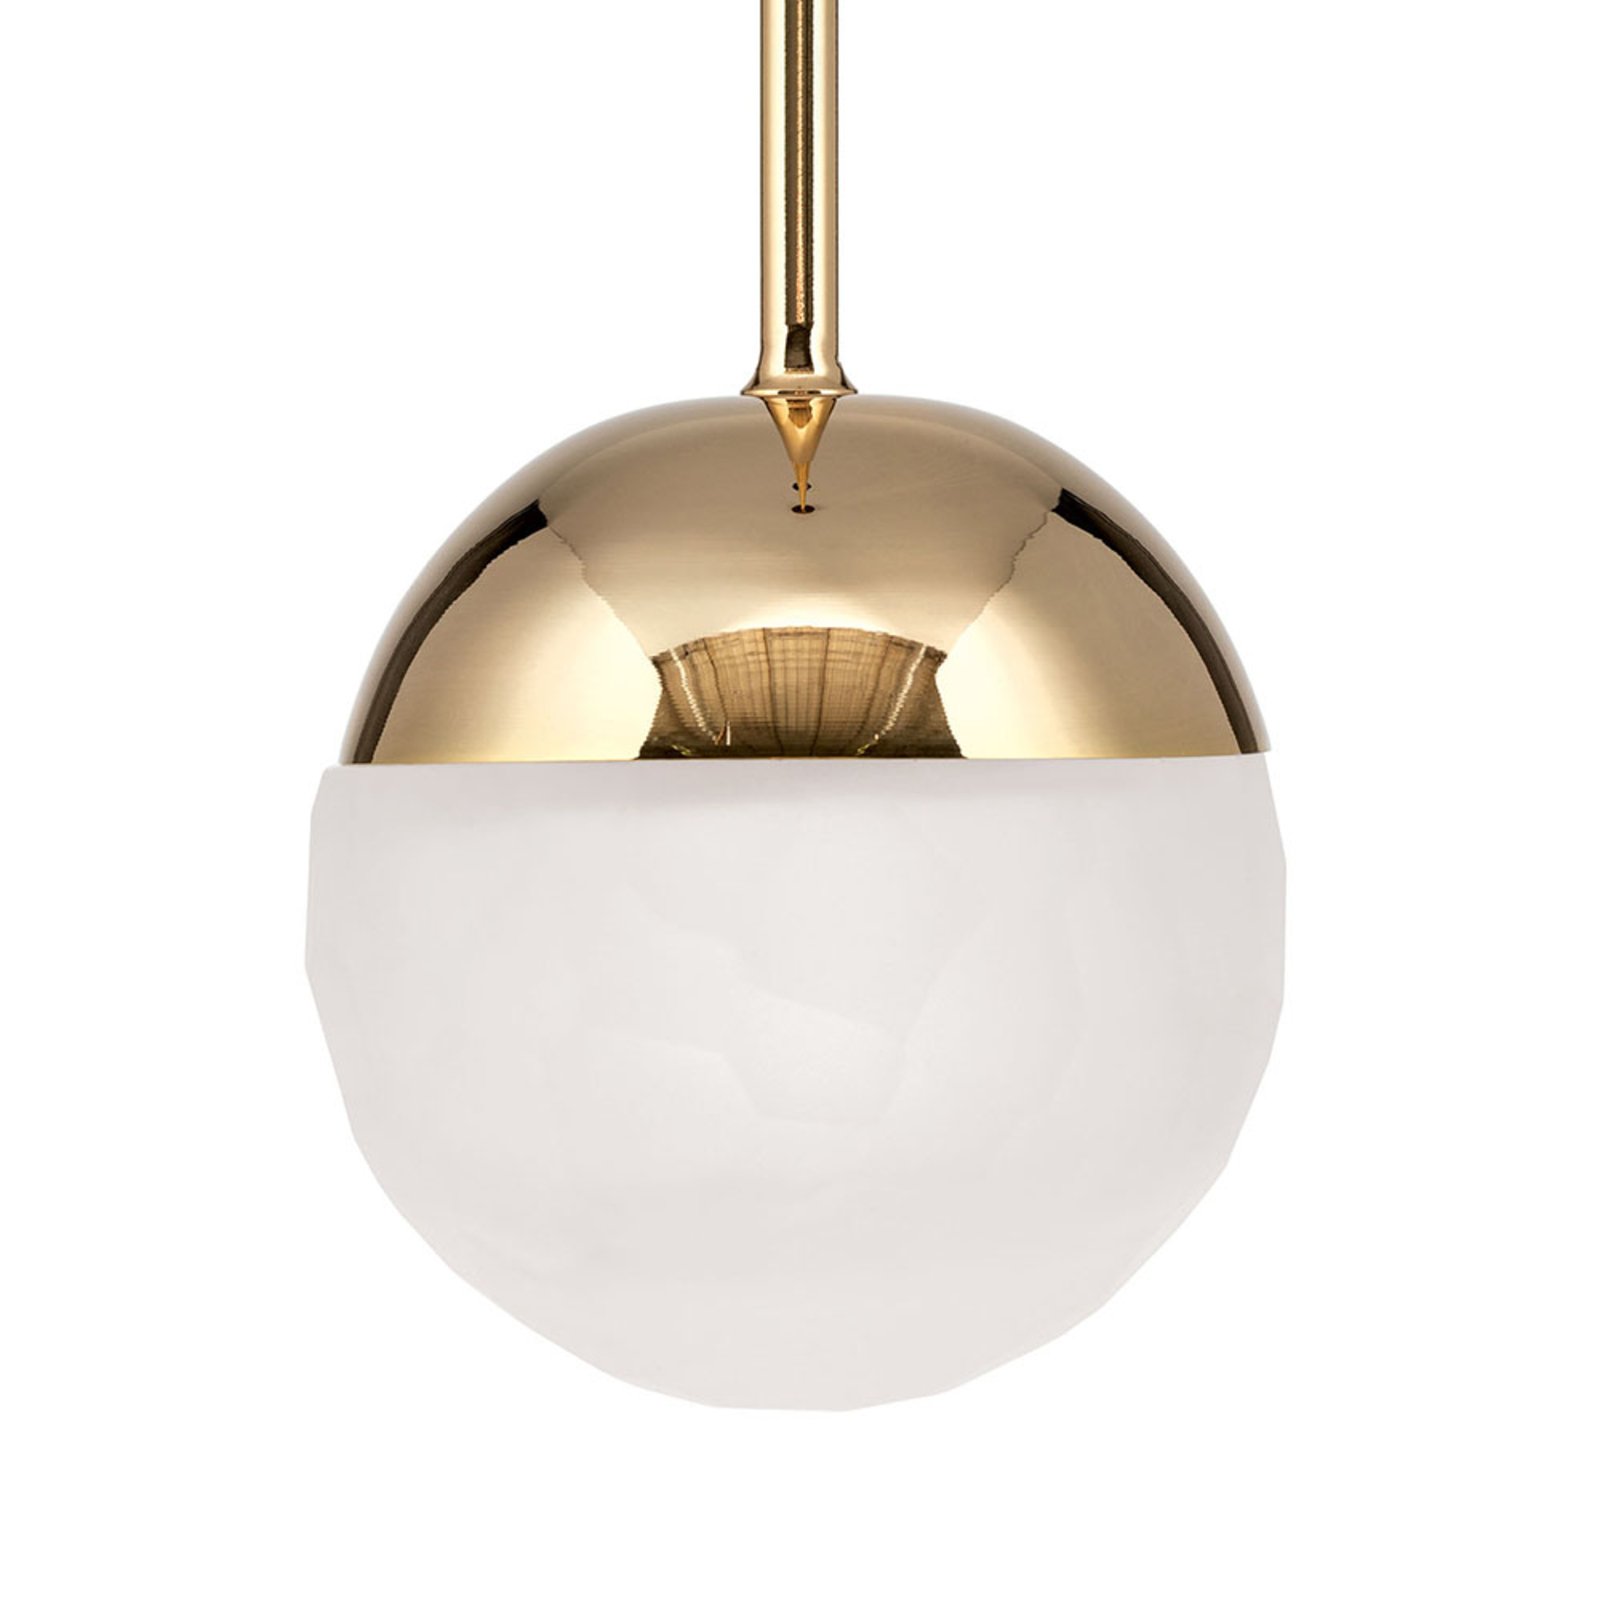 LED-riippuvalaisin Ball, yksilamppuinen, kulta